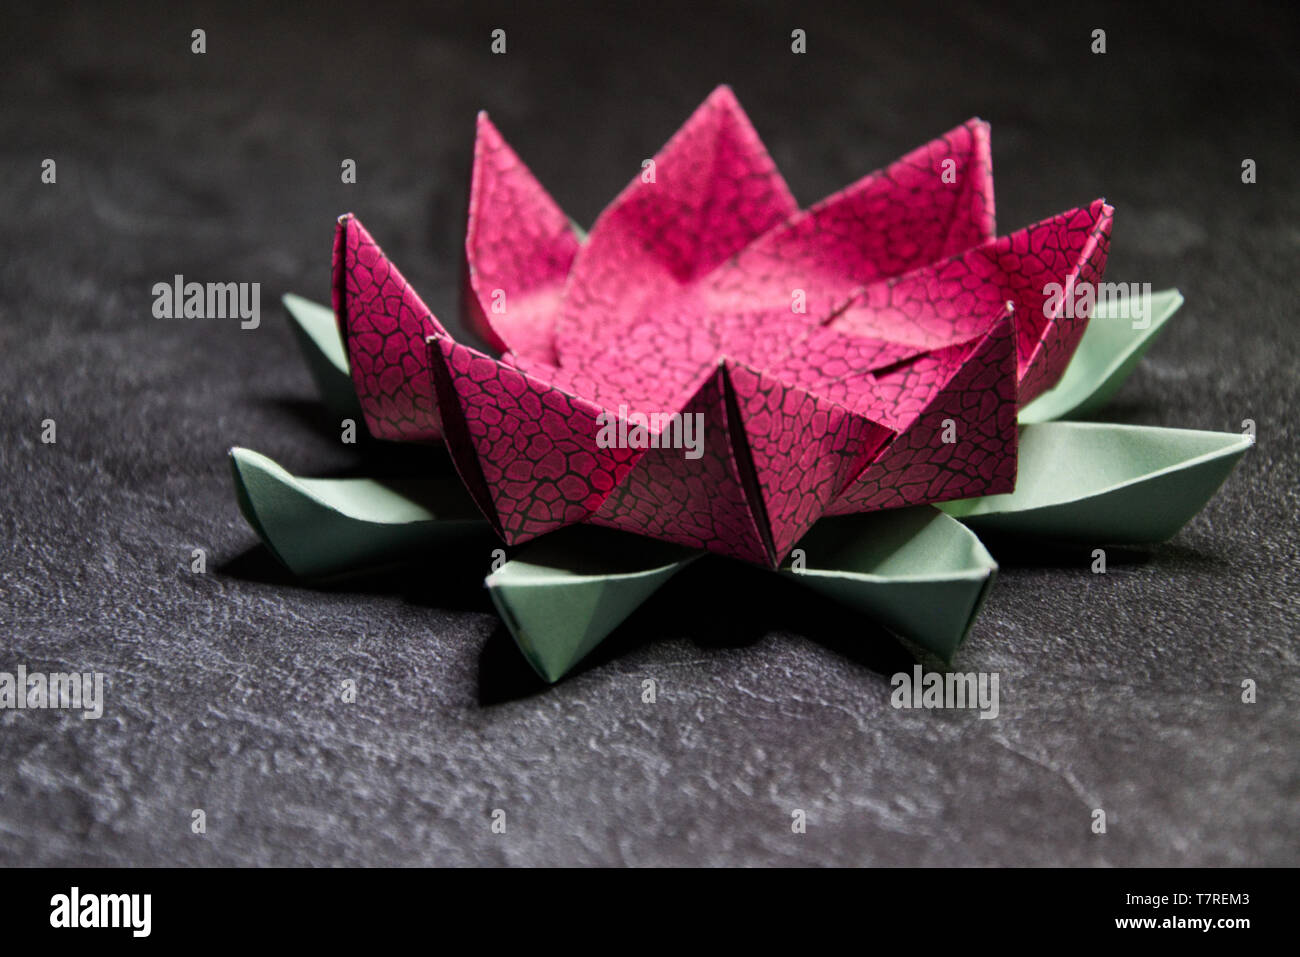 Modular Origami Lotus Flower